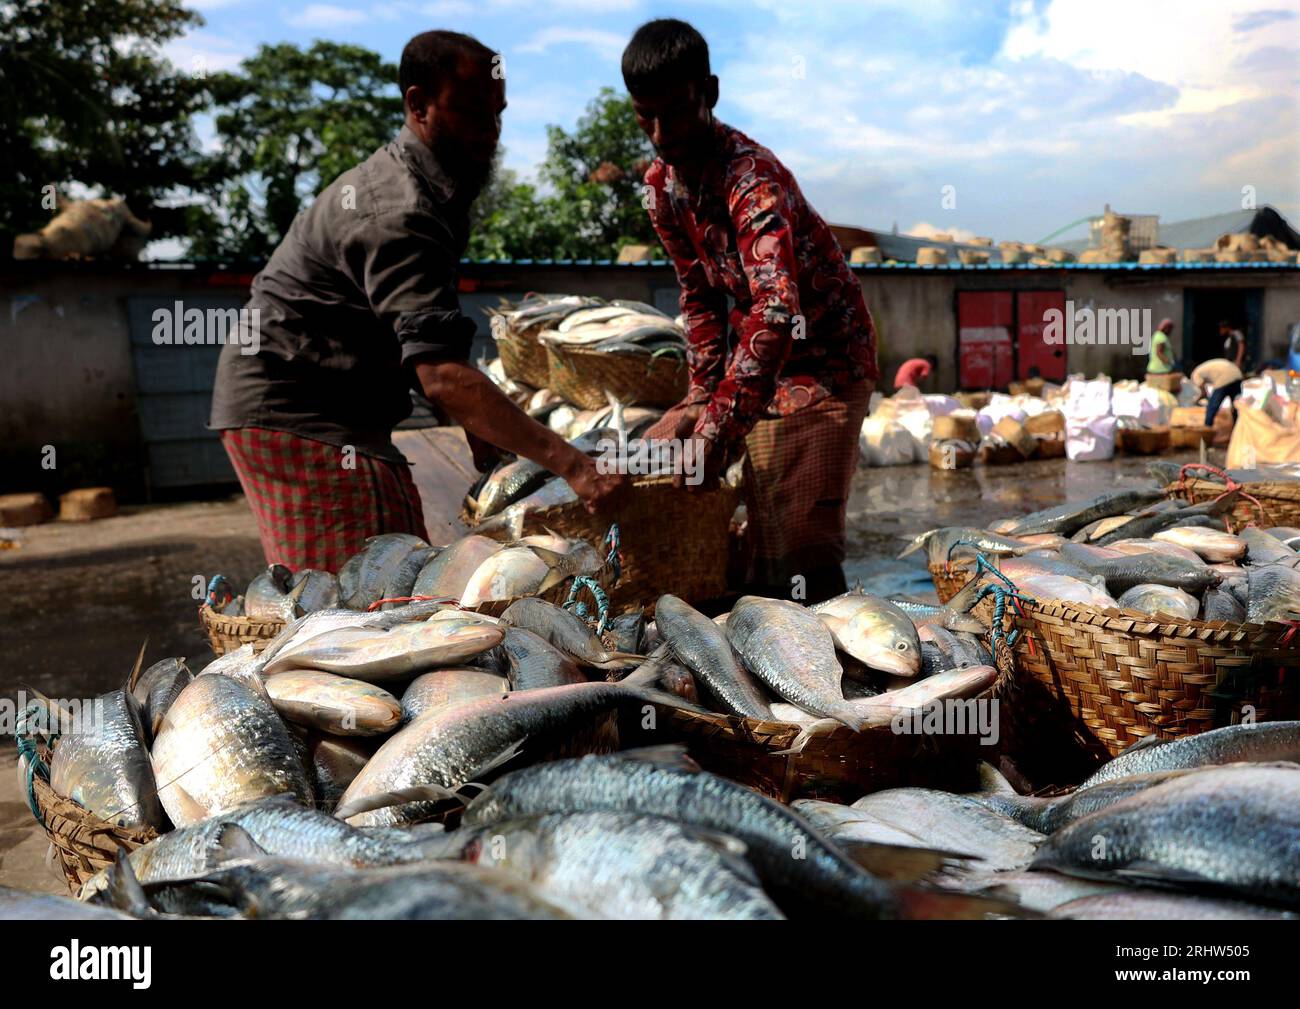 Chittagong, Fischerei Ghat, Bangladesch. Aug. 2023. August 2023. Chittagong, Bangladesch: Der Großhandelsmarkt für die Fischerei in Chittagong, Bangladesch, hat sich während der Hilsa-Fischsaison angesammelt. Der nationale Fisch von Bangladesch, hilsa, wird an Einzelhändler verkauft, nachdem er aus dem Meer gewonnen wurde. Die Fischer freuen sich, mehr Hilsa im Meer zu finden. (Bild: © Mohammed Shajahan/ZUMA Press Wire) NUR REDAKTIONELLE VERWENDUNG! Nicht für kommerzielle ZWECKE! Stockfoto